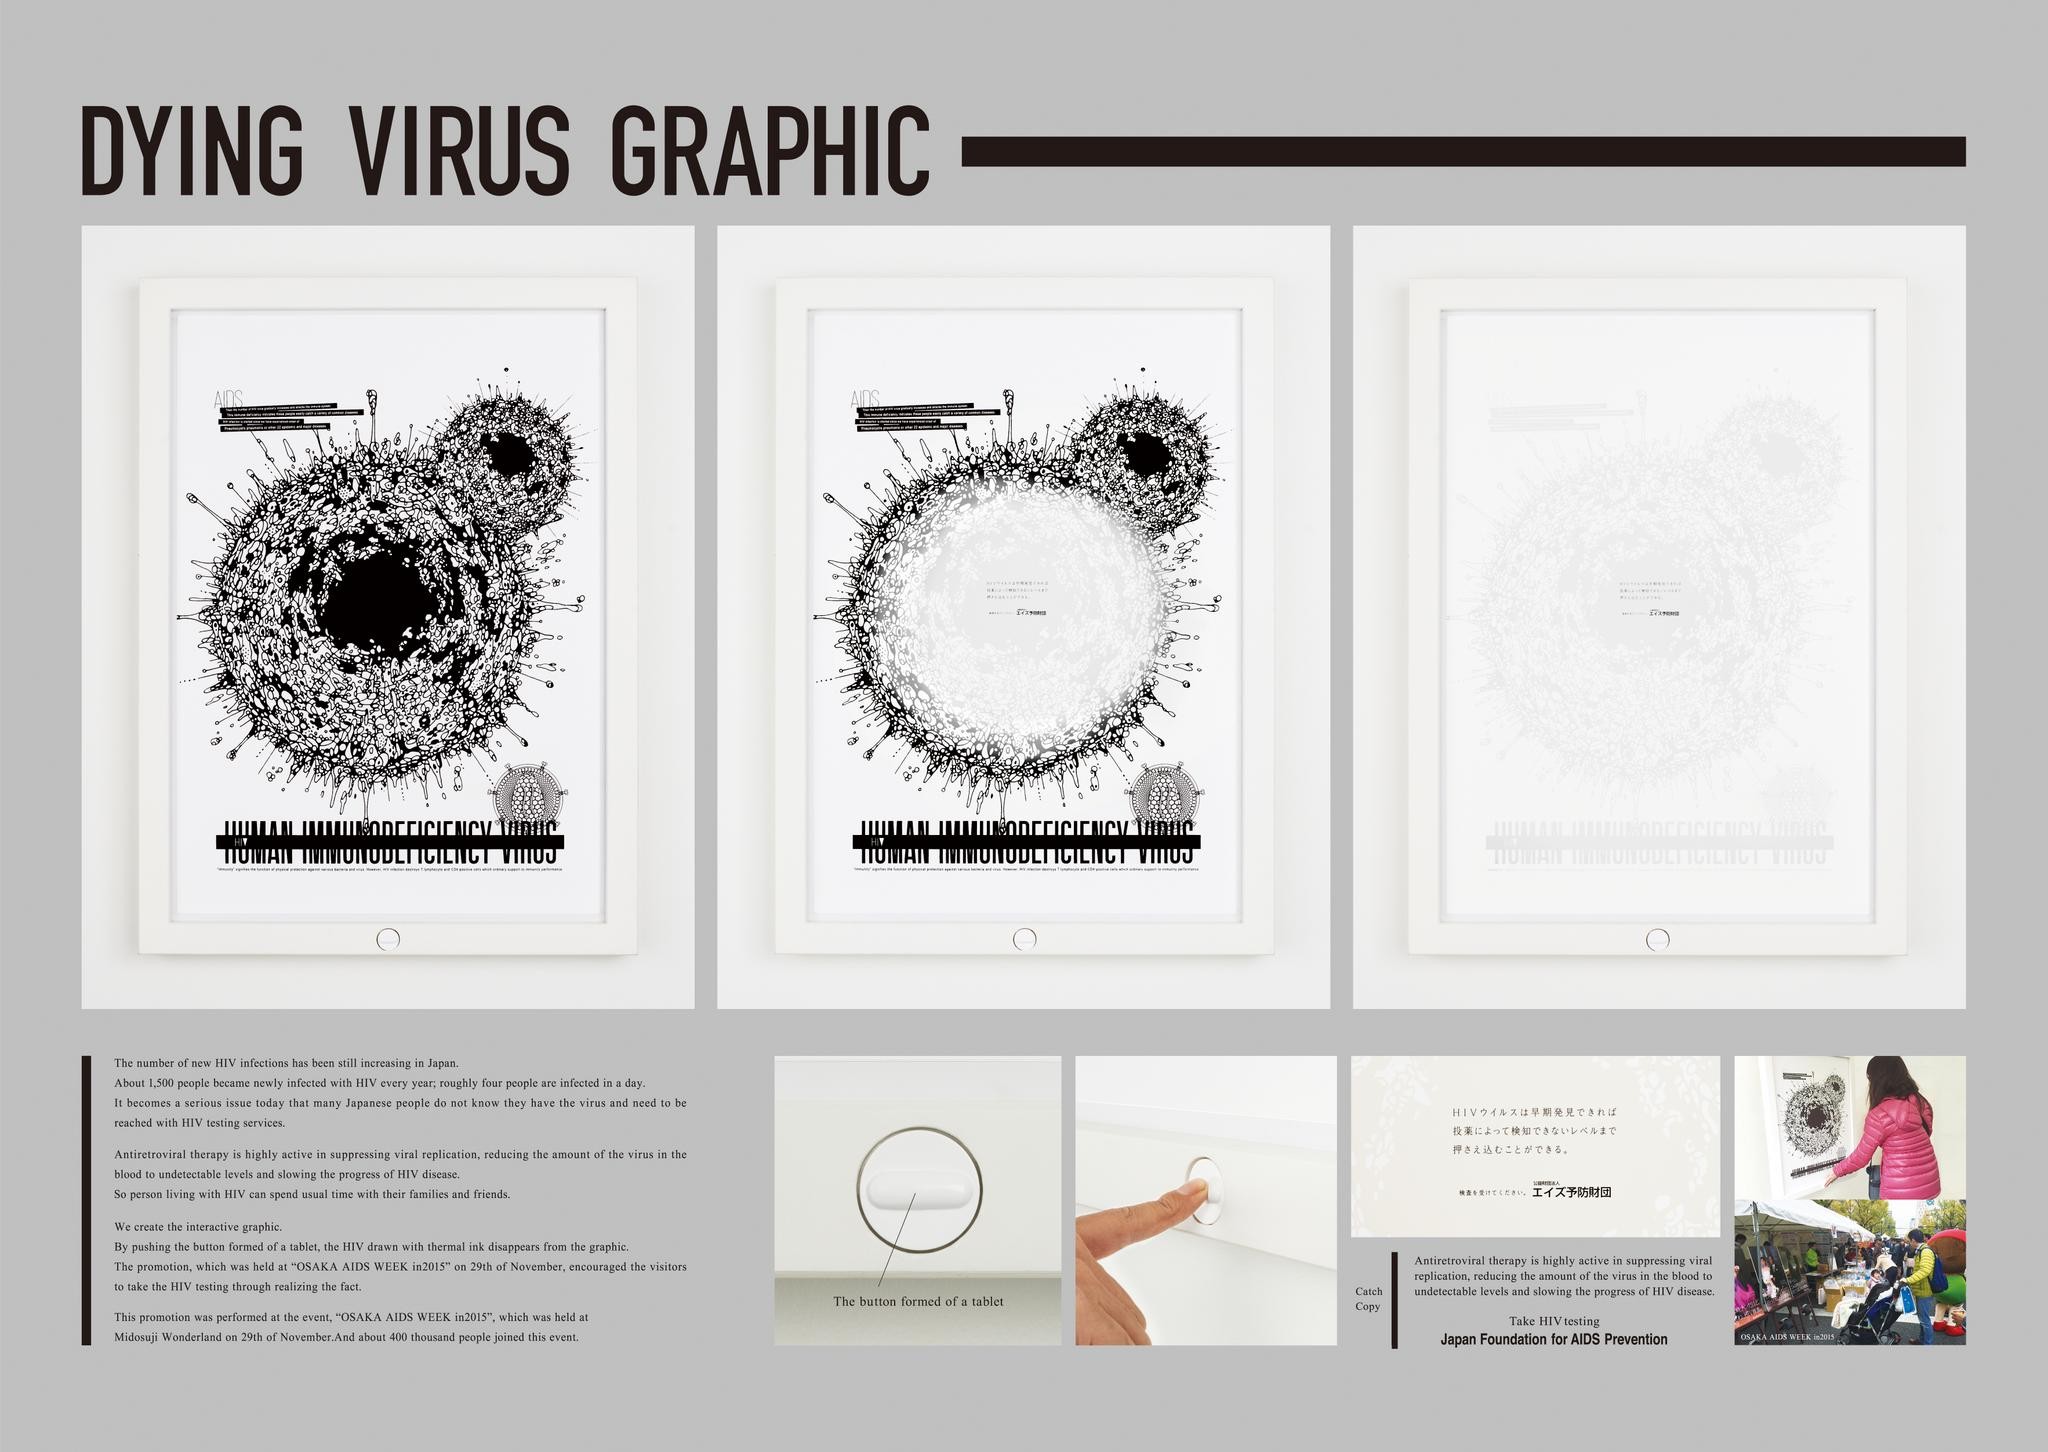 Dying virus graphic